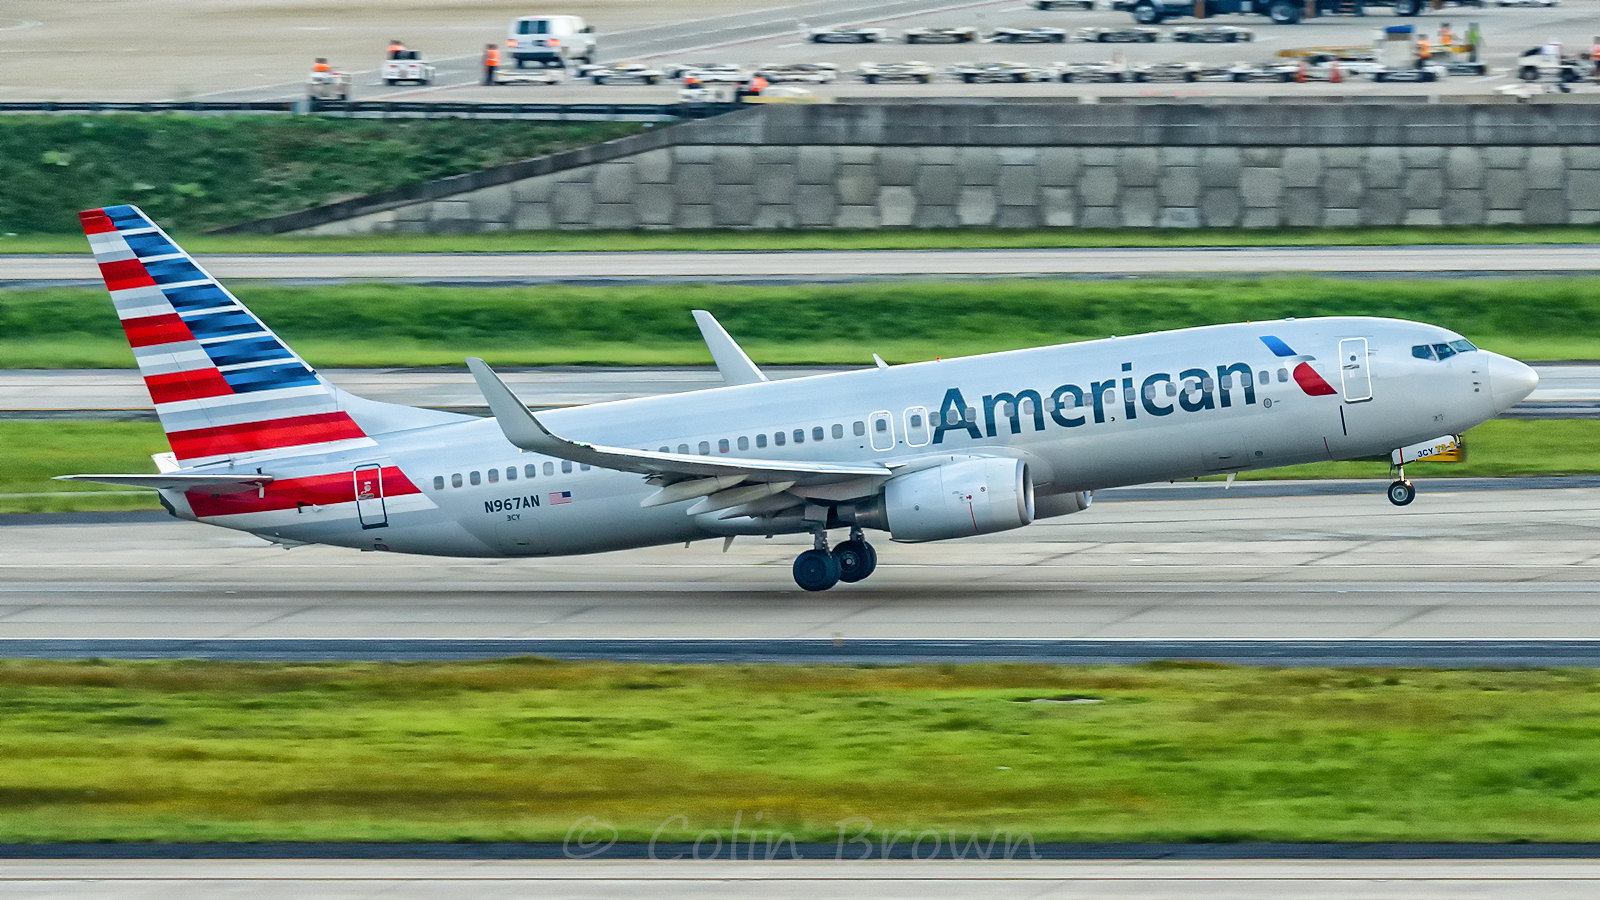 Un avion de la compagnie American Airlines sur une piste d'atterrissage | Source : flickr.com